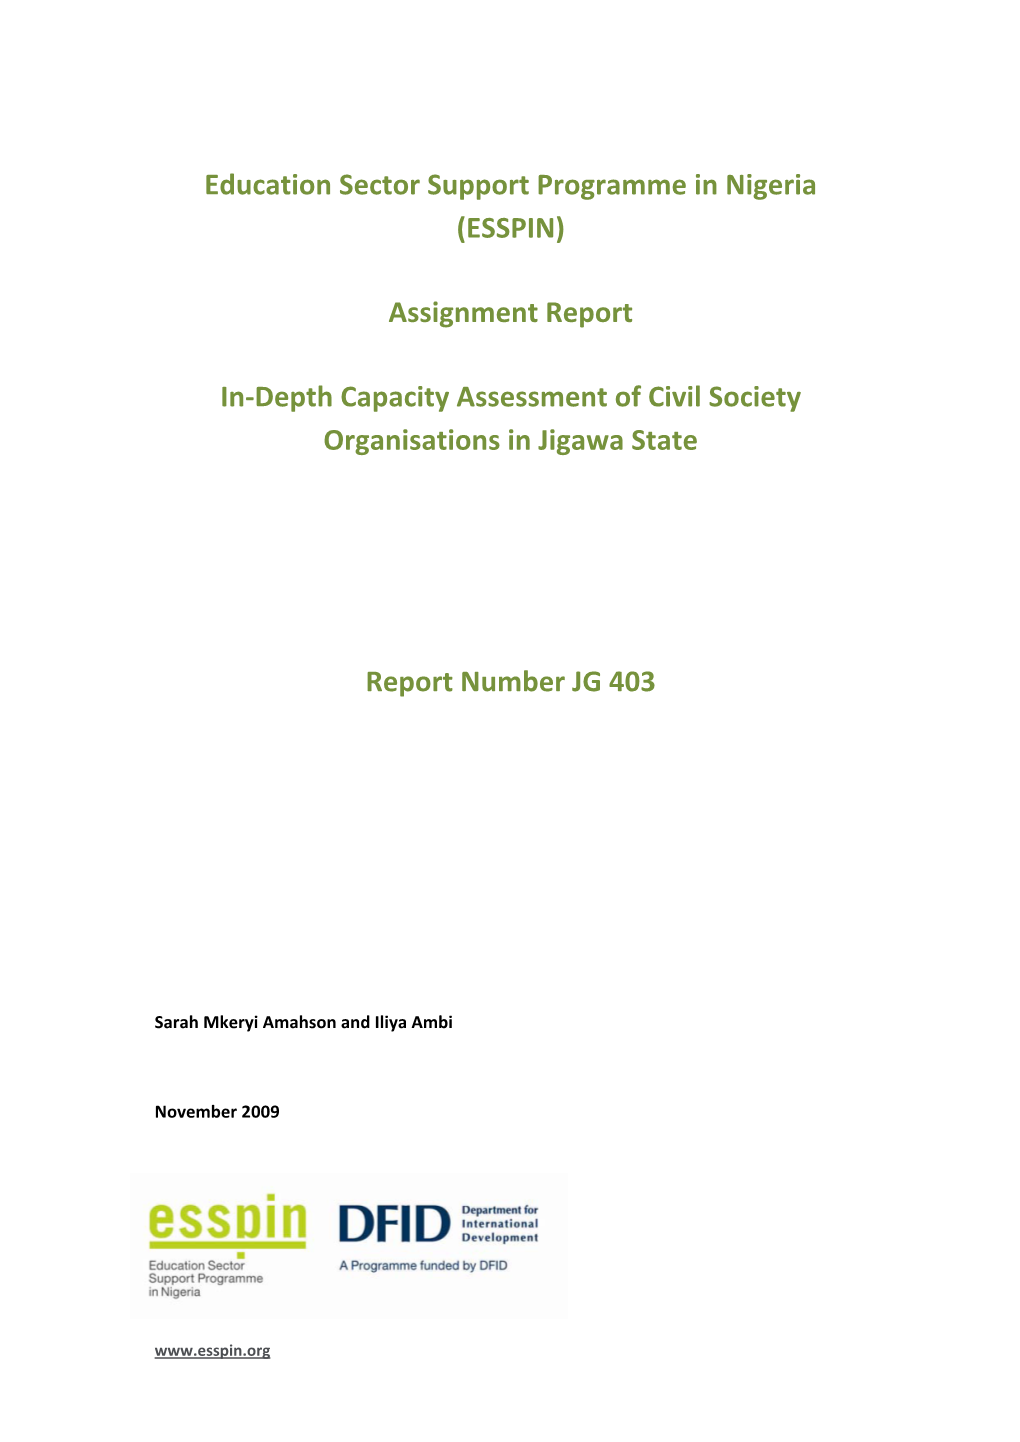 JG 403 In-Depth Capacity Assessment of Csos in Jigawa State